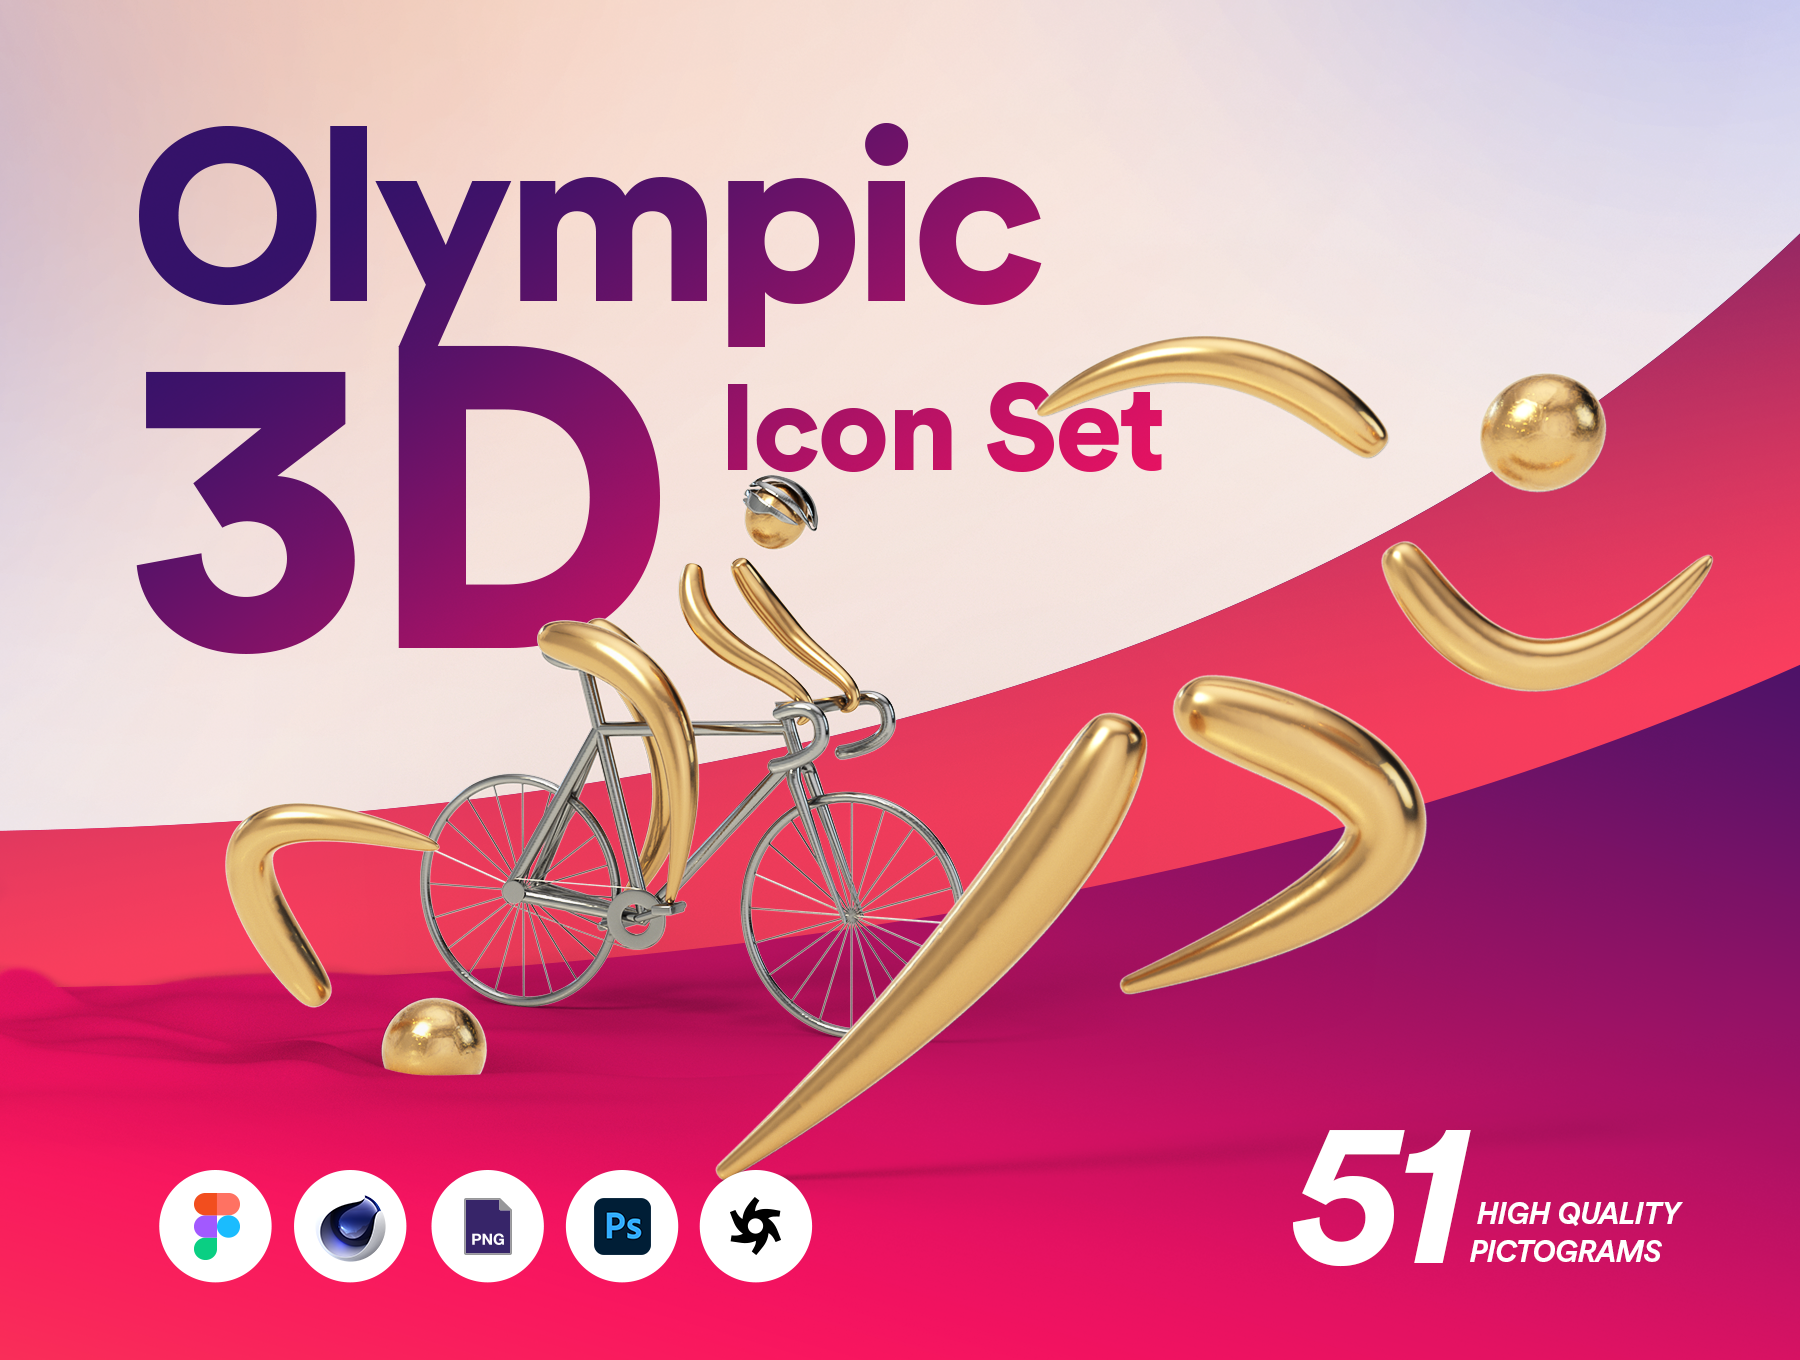 12.55GB冬奥会国际运动项目3D图标合集 Olympic 3D Icon Set